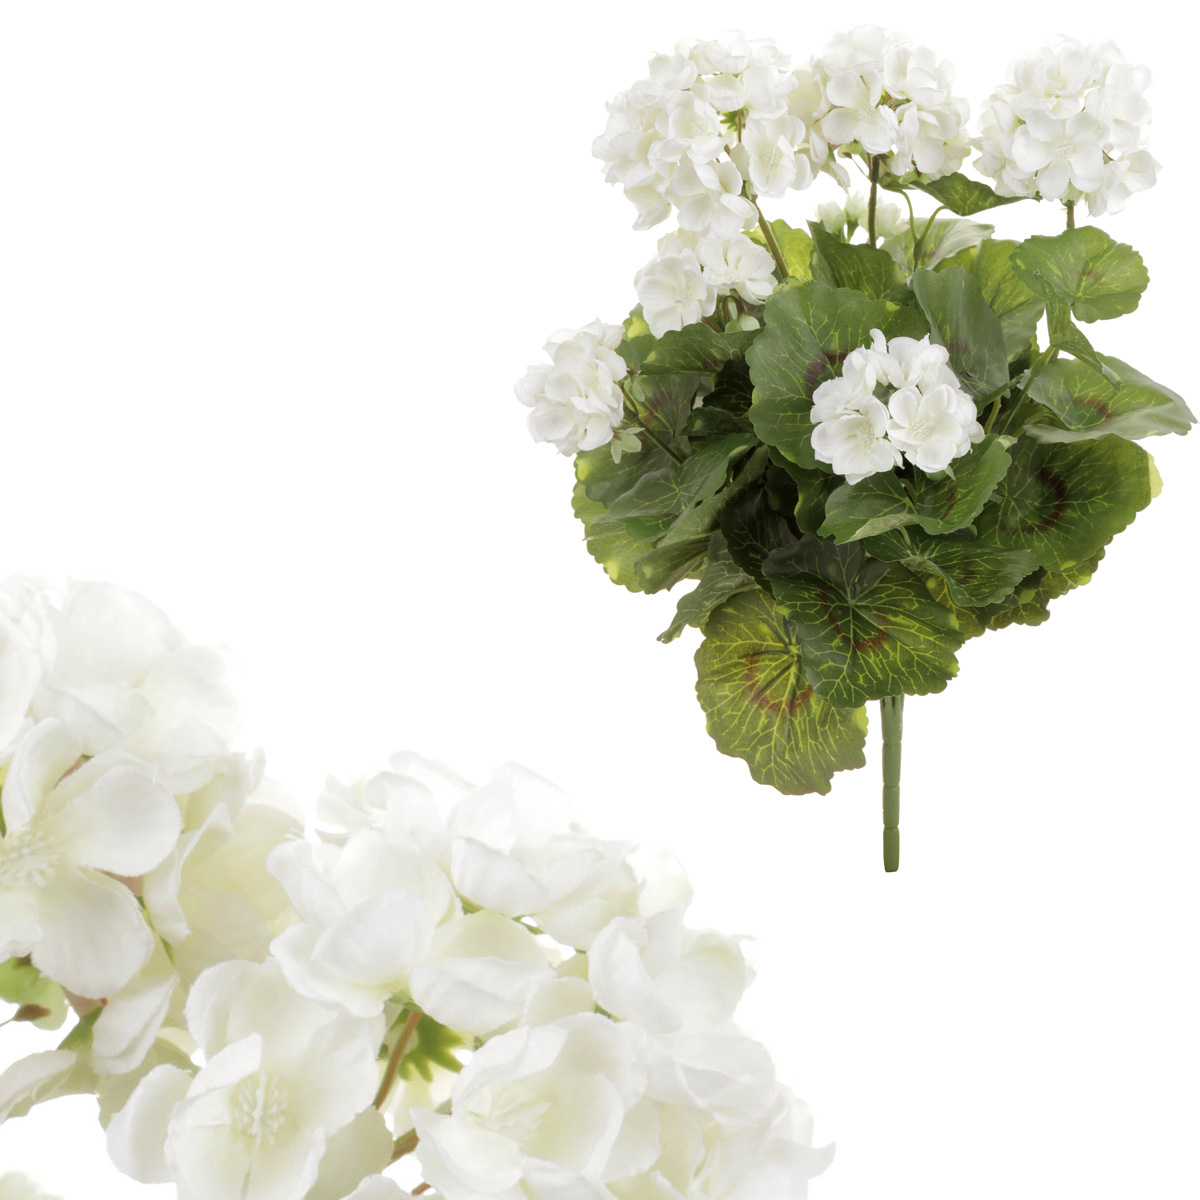 Muškát - kytice z umělých květin, barva bílá.